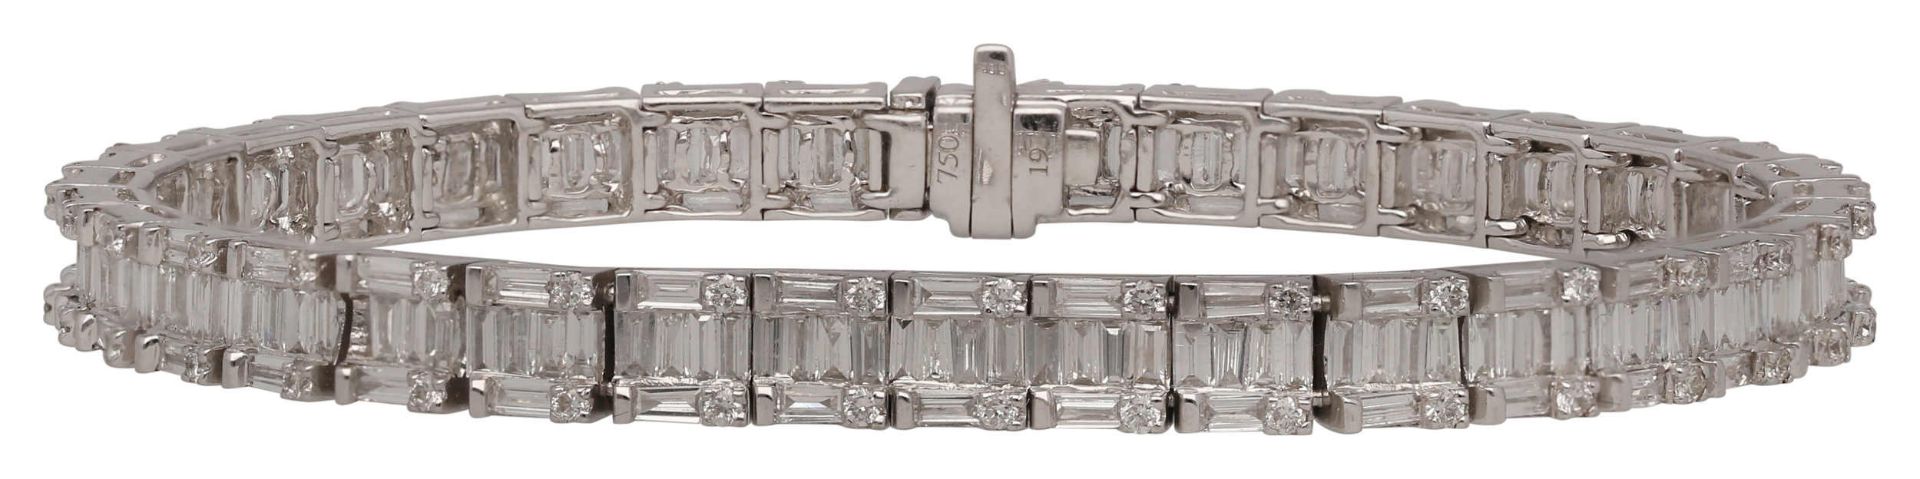 Rivière-Armband Sportlich elegantes Brillant-Armband in Weissgold 18K. Diamanten im Brillant- und